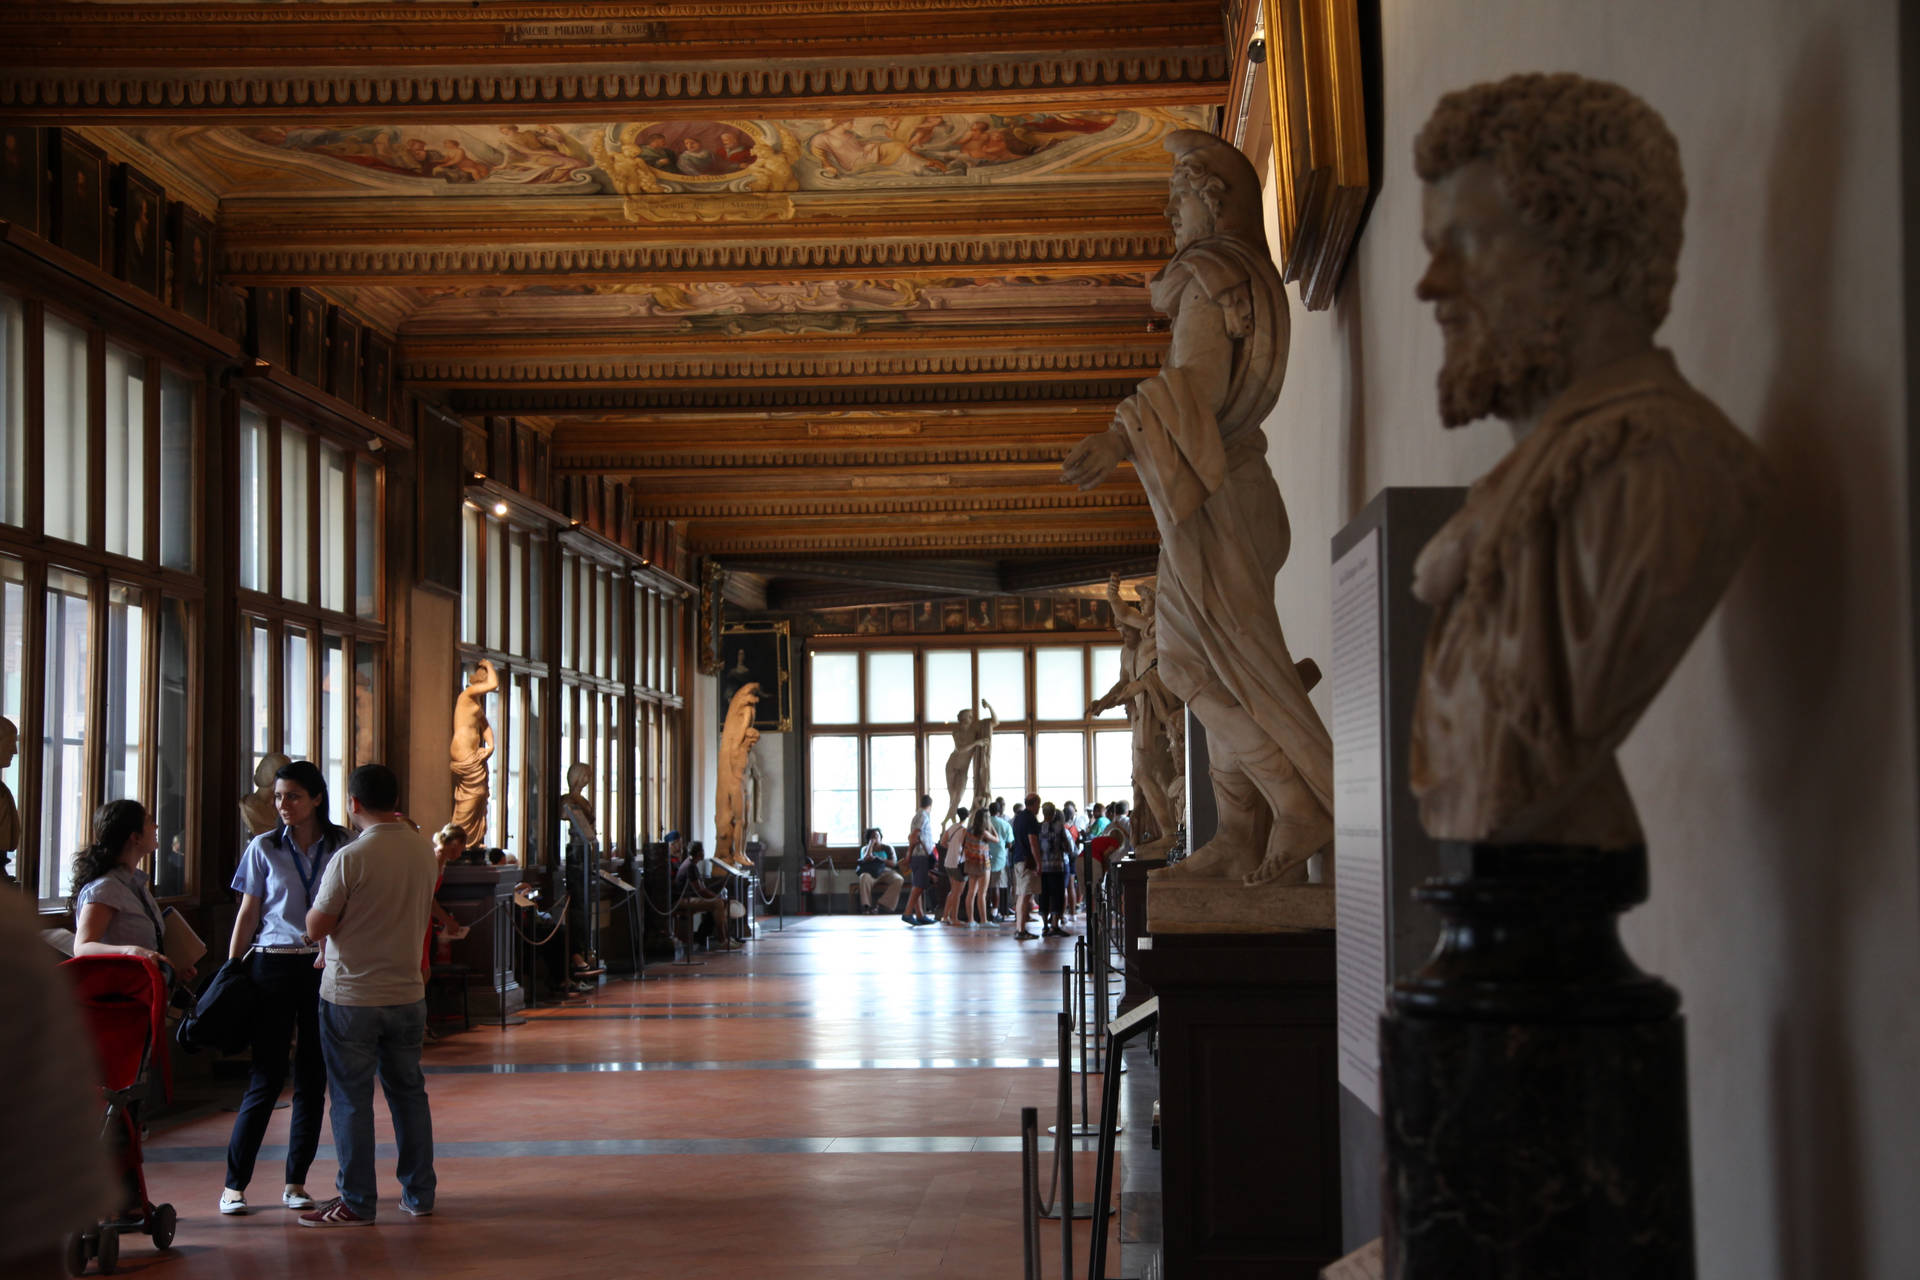 Busy Uffizi Gallery